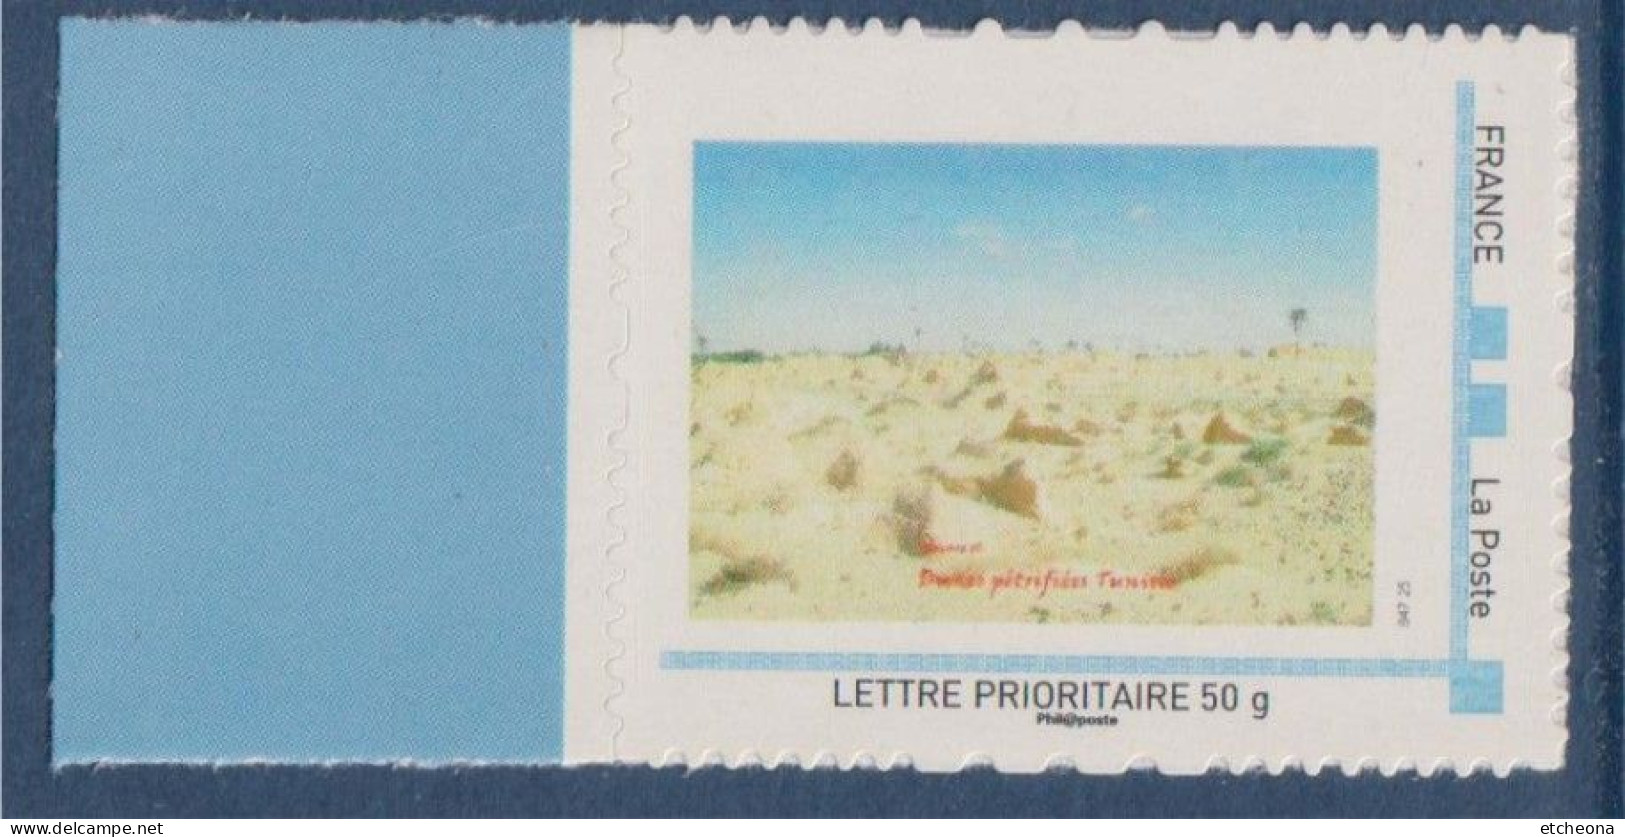 MonTimbraMoi, France -50g Horizontal, Série Nature, Dunes Pétrifiées  Tunisie, Type Etoile - Ungebraucht